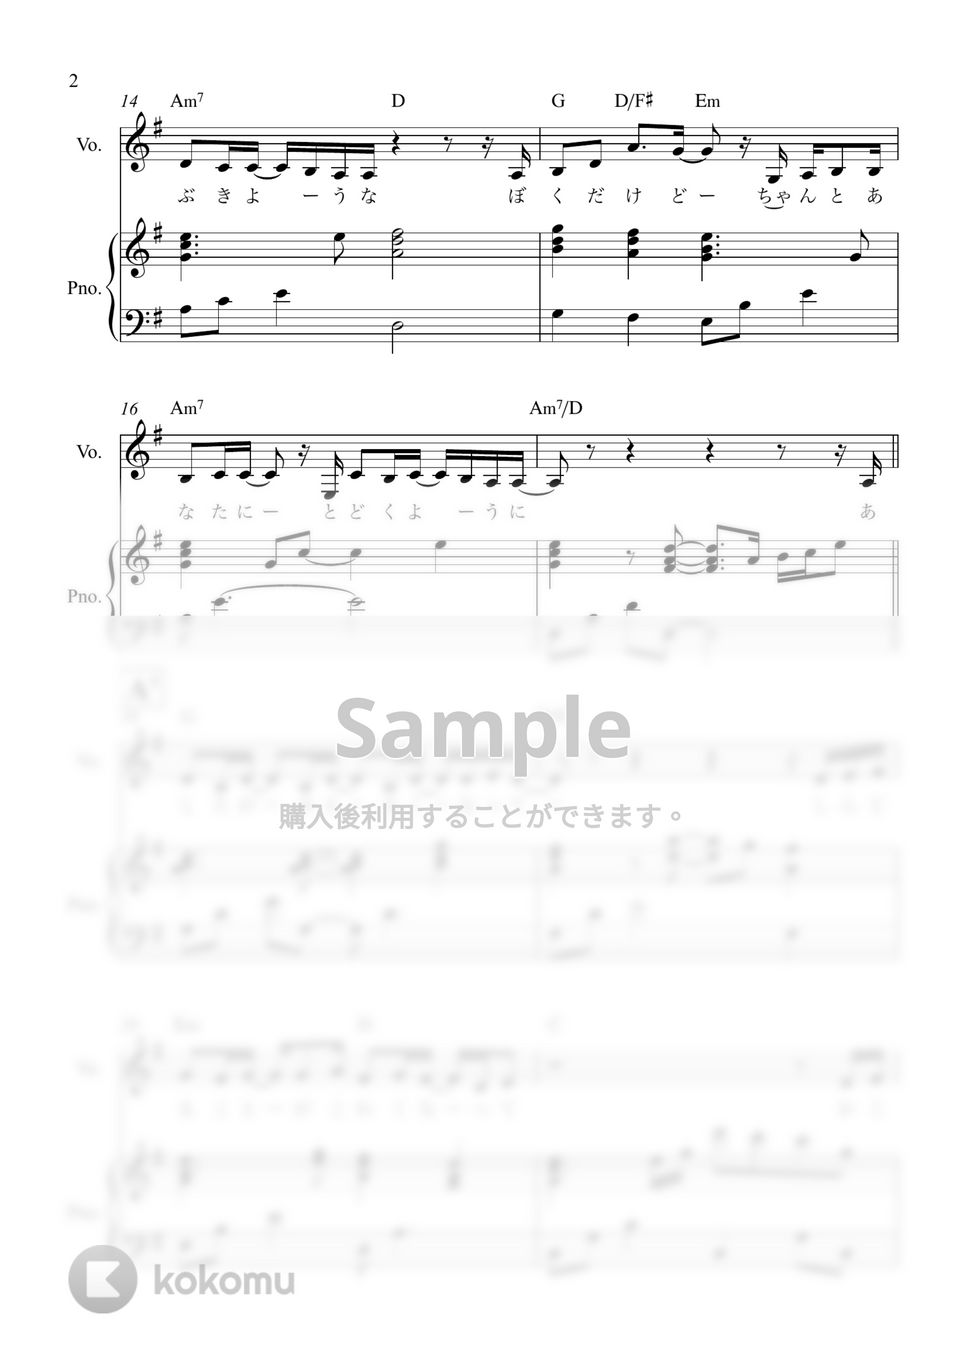 Uru - あなたがいることで (ピアノ弾き語り) by 泉宏樹